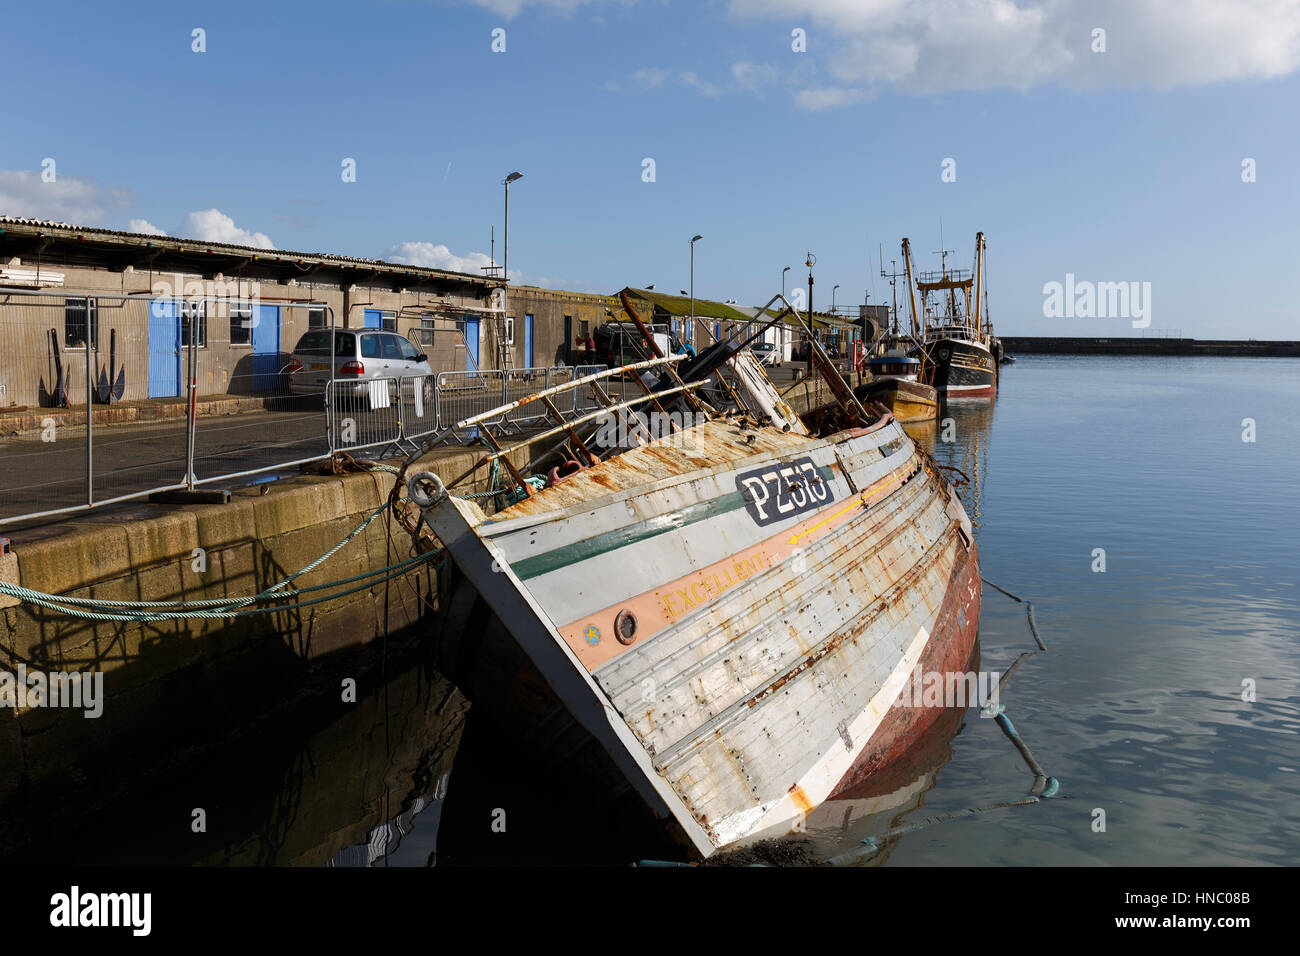 Una línea de barcos de pesca y la retirada abandonados yacen junto al East Quay muralla en Newlyn Harbour Foto de stock